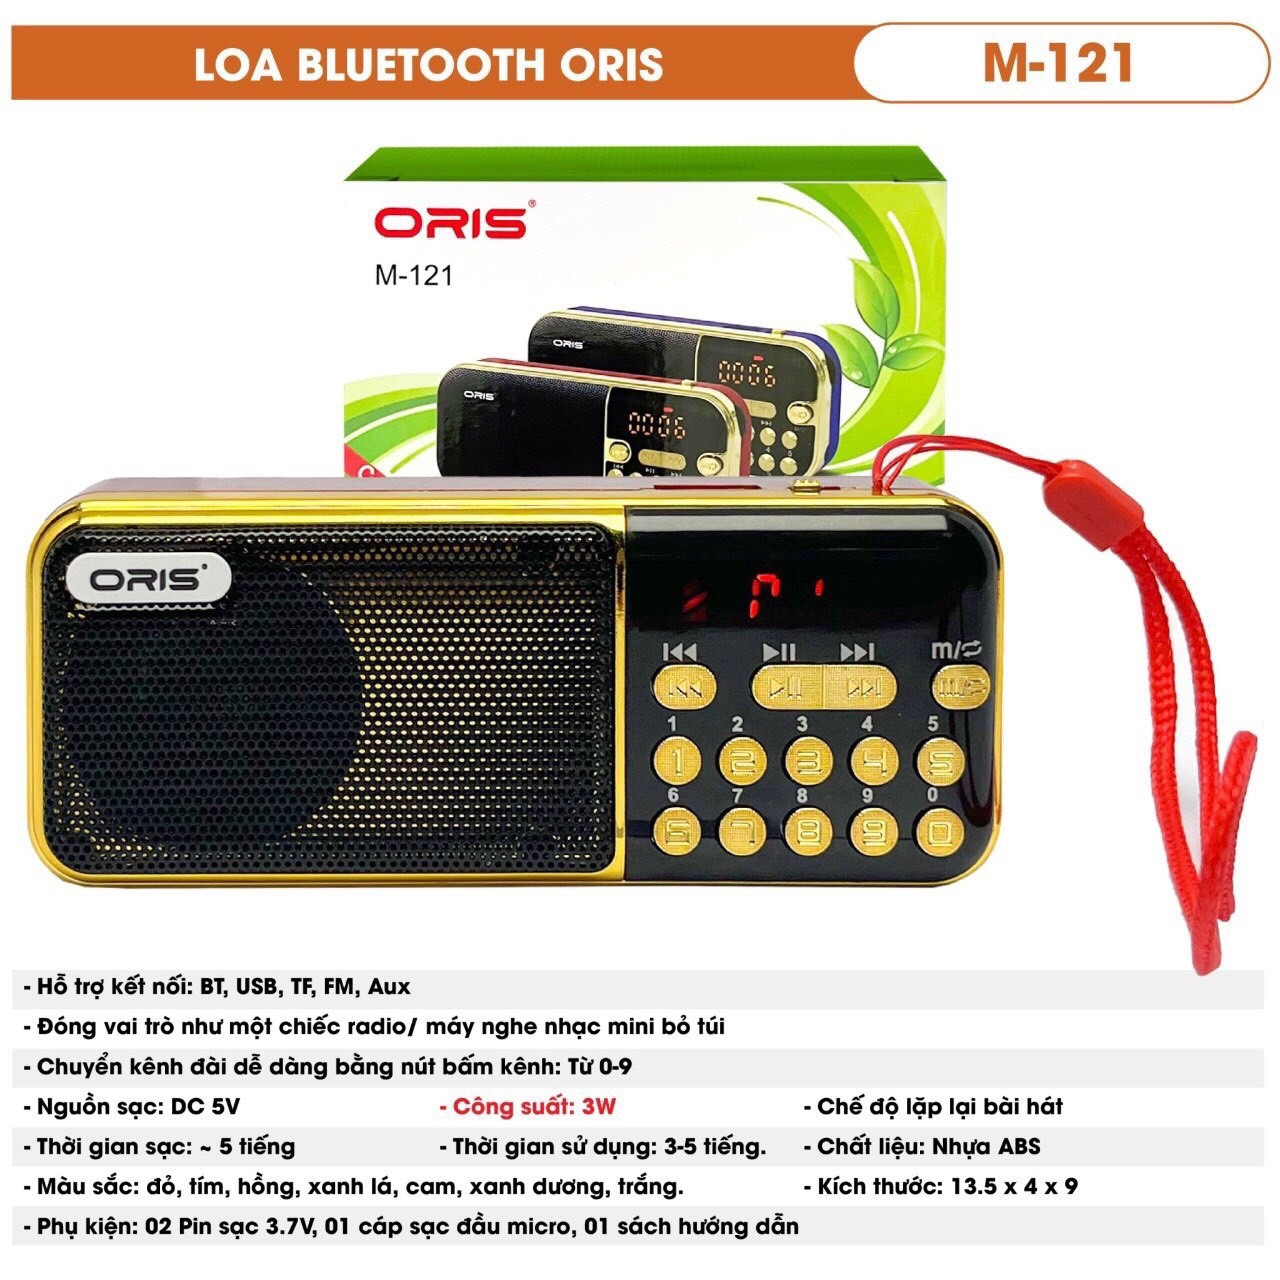 Loa radio tích hợp nghe nhạc ORIS M-121 có hỗ trợ BLUETOOTH, FM, USB, AUX, TF